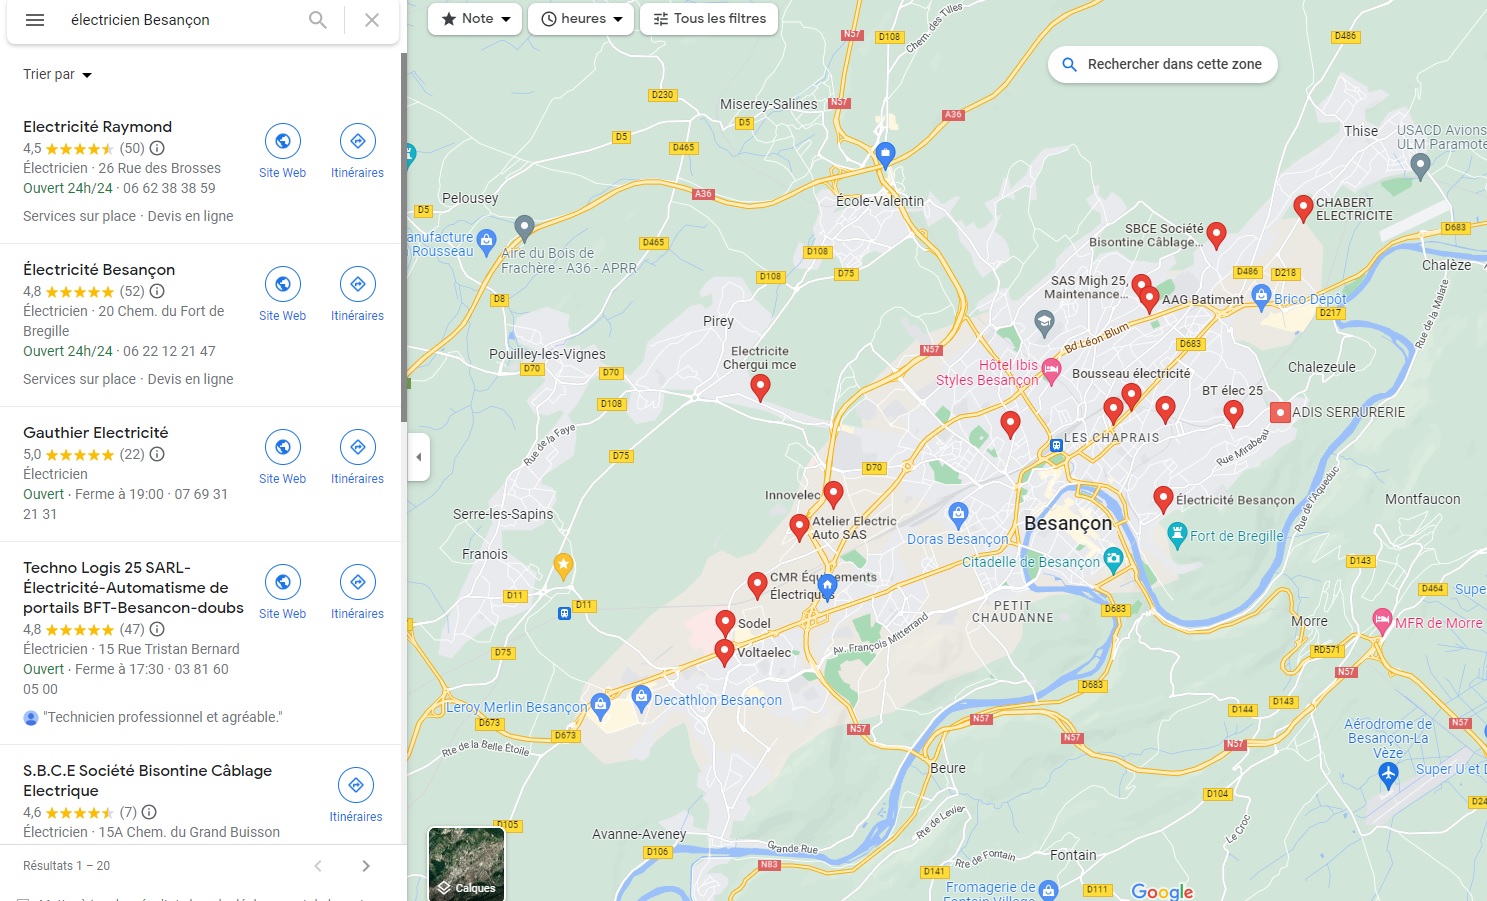 électriciens de Besançon sur Google Maps